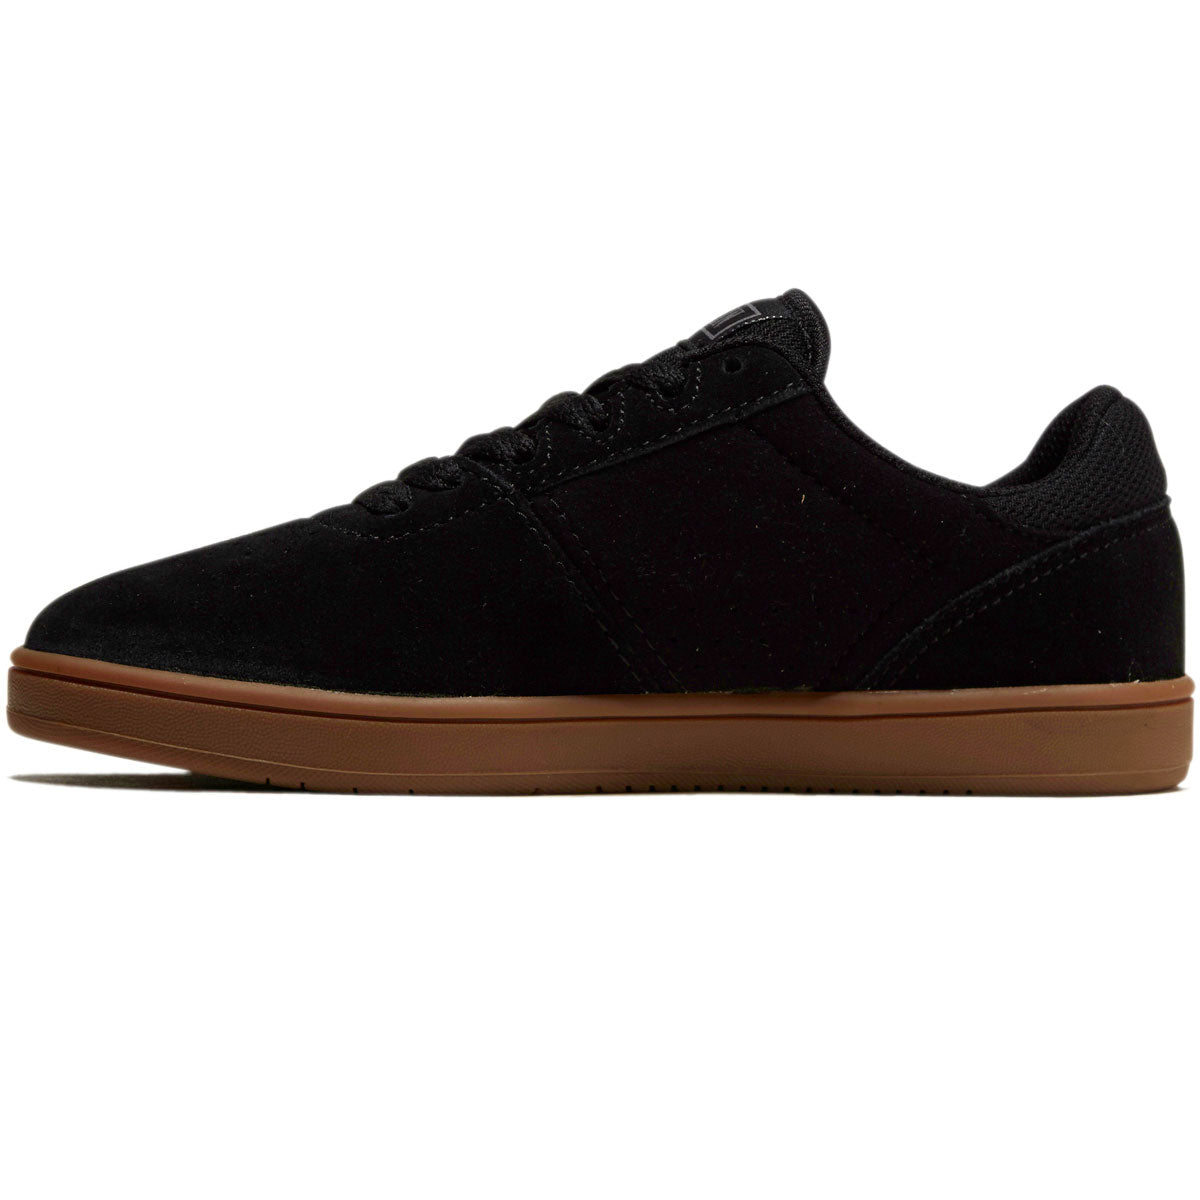 Etnies Youth Josl1n Shoes - Black/Gum image 2